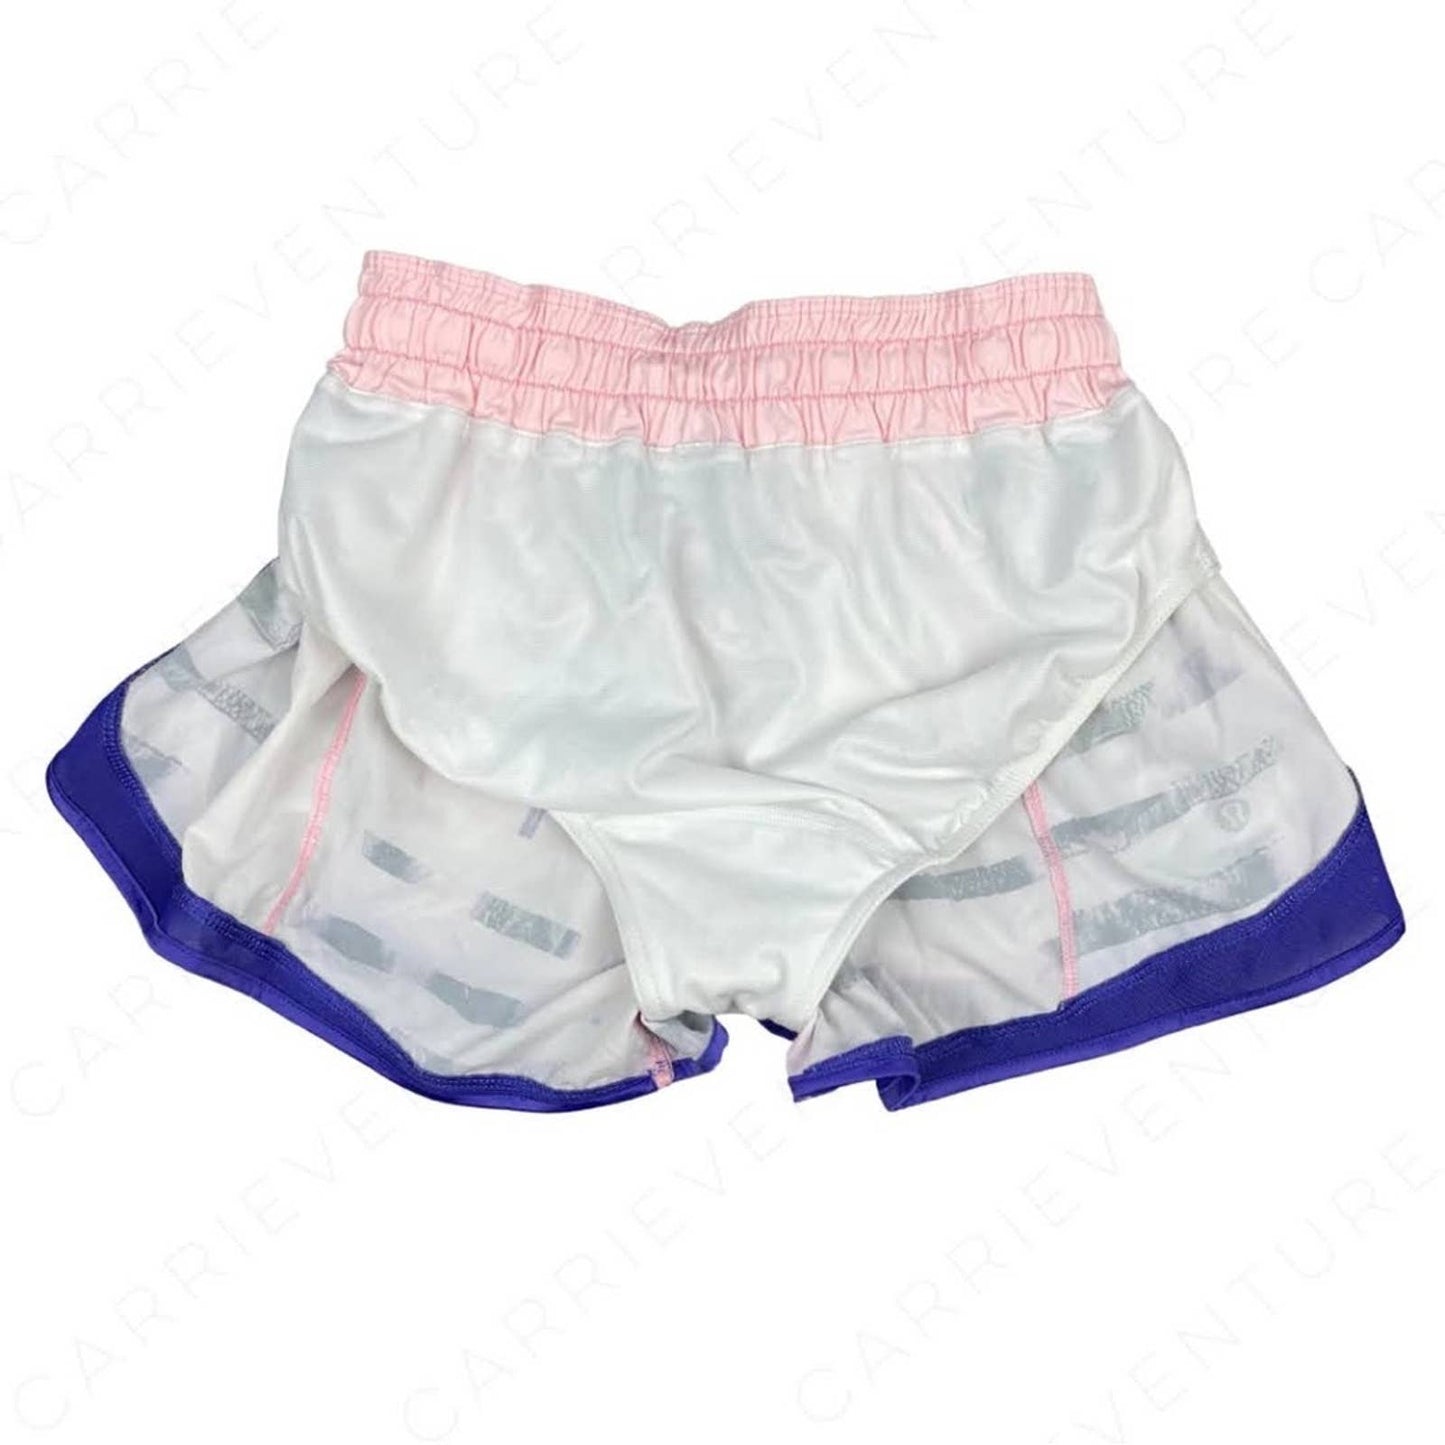 Lululemon Super Squad Short Sunset Stripe Blush Running Active Athletic Shorts Size 4